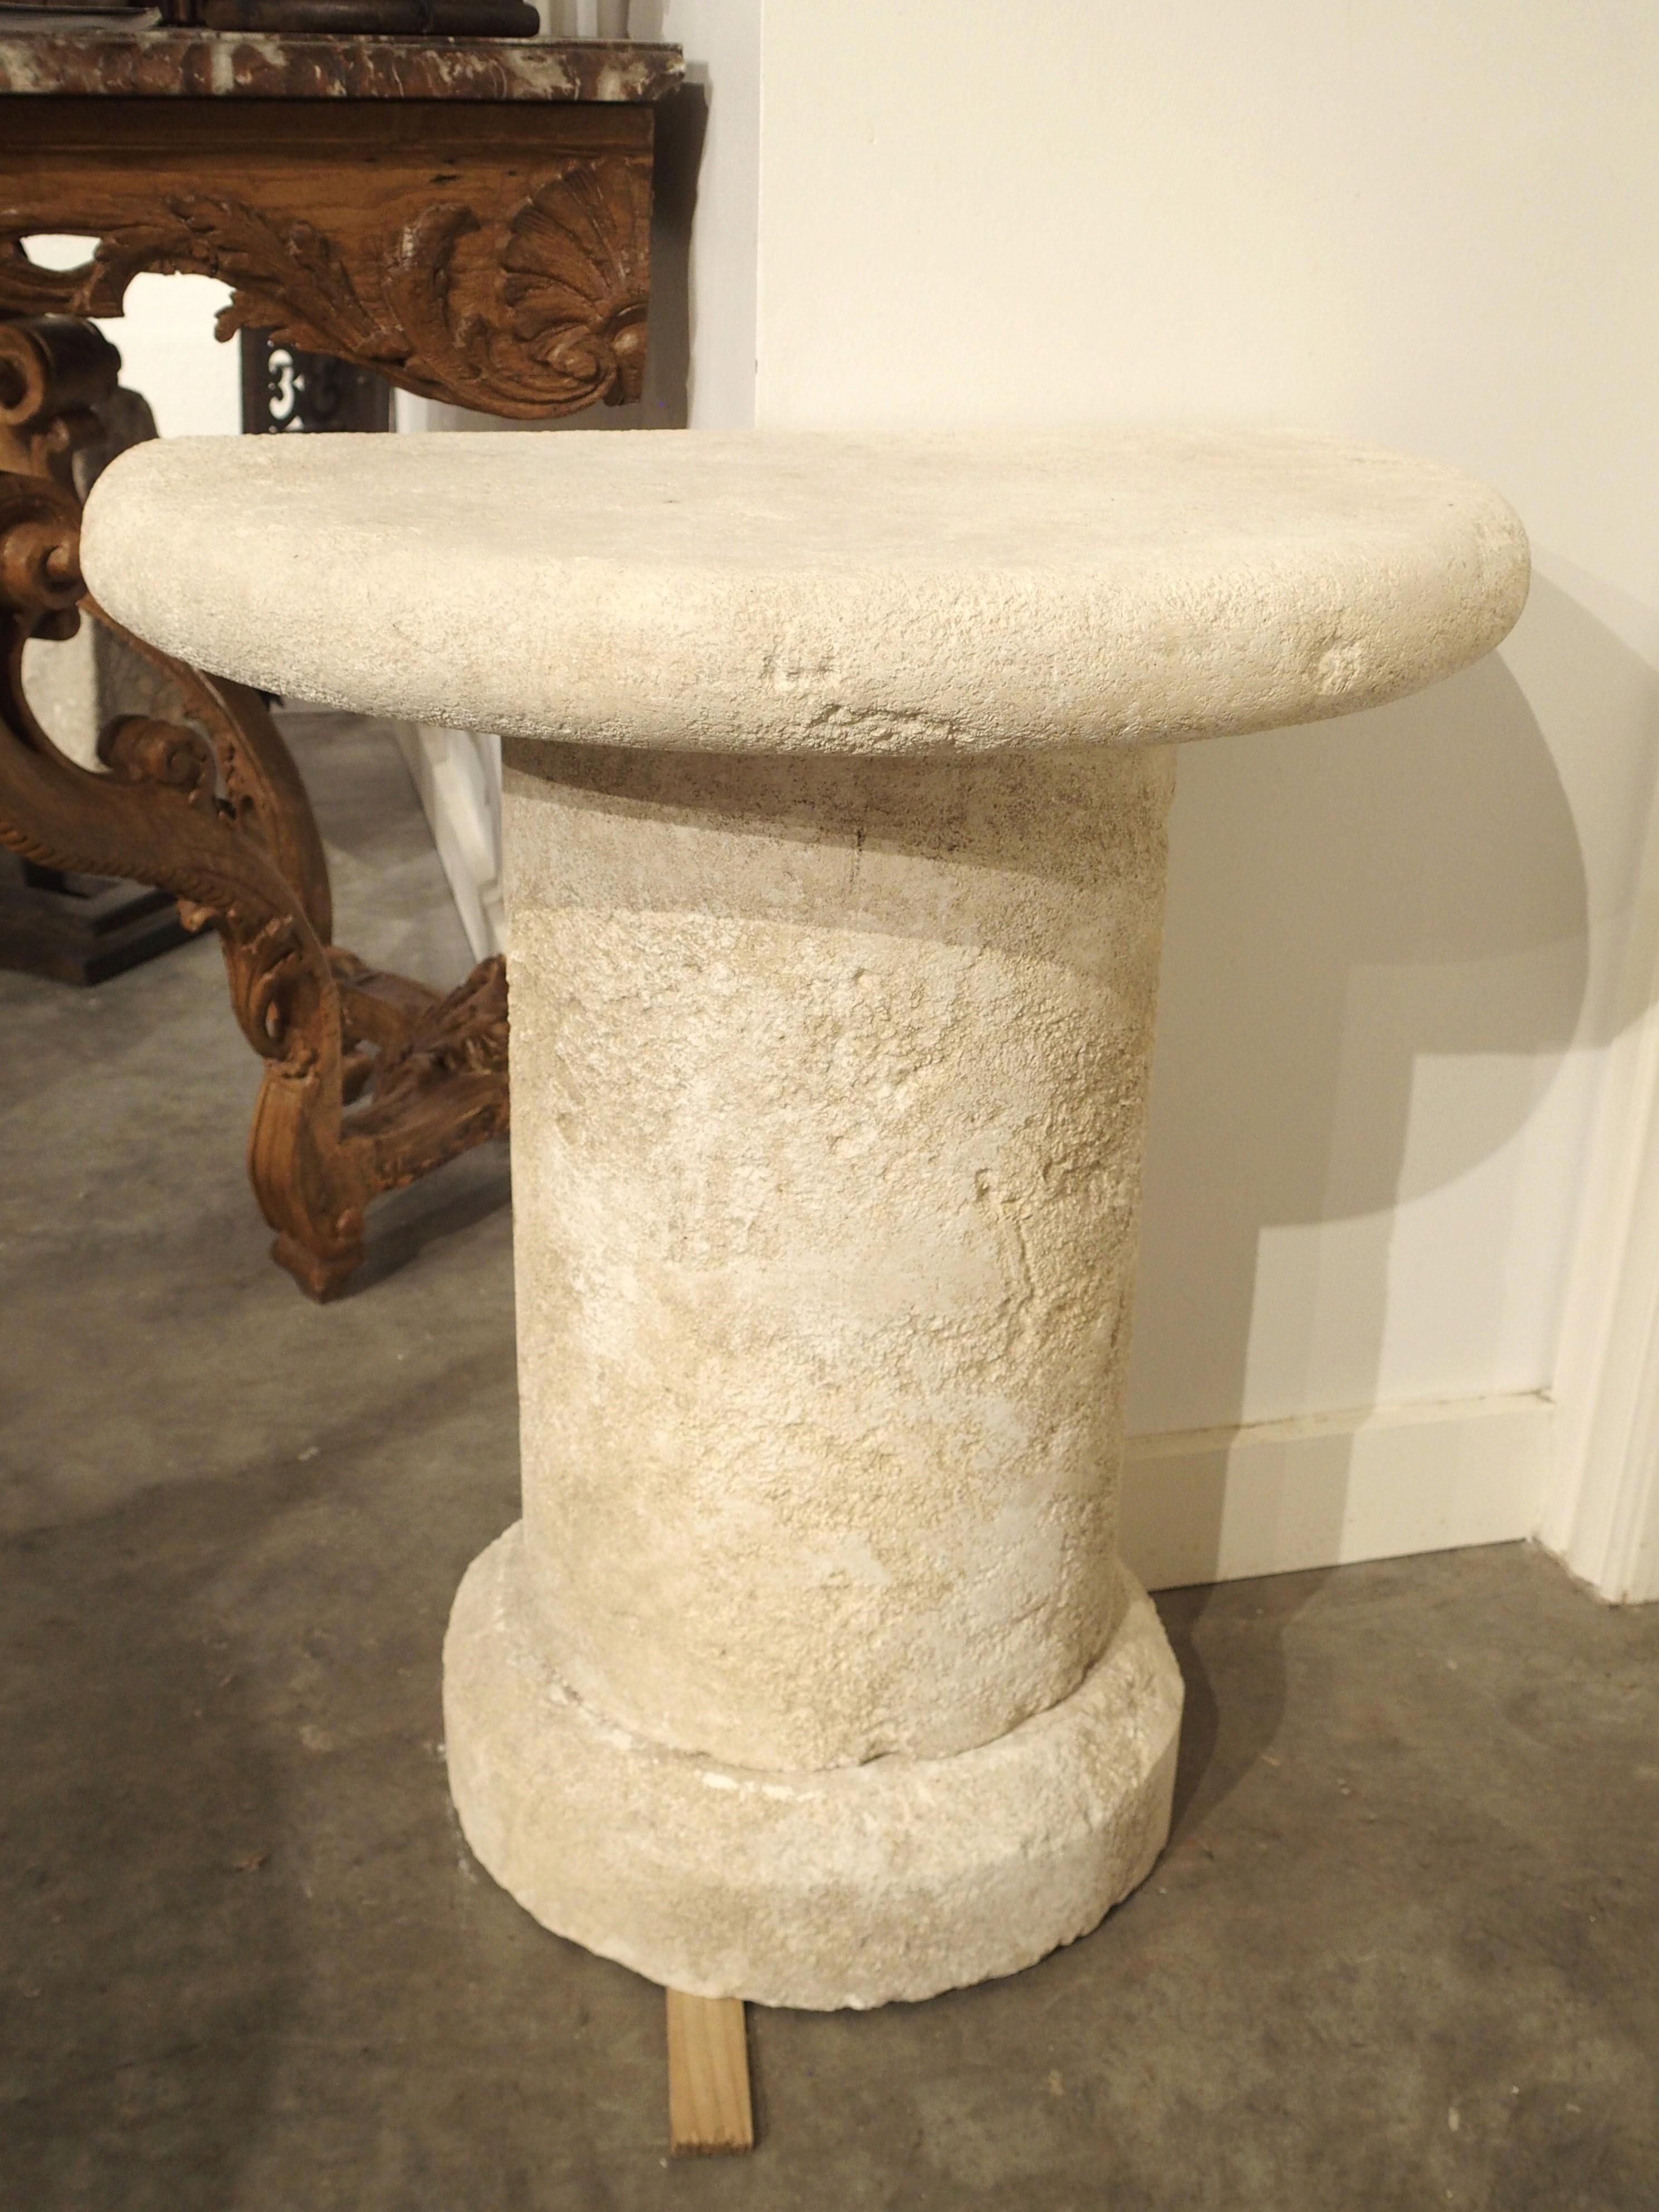 Originaire de Provence, en France, cette petite table console démilune a été sculptée à la main dans de la pierre calcaire en trois sections. Le plateau de deux pouces et demi d'épaisseur repose sur une colonne de trois quarts au-dessus d'une base